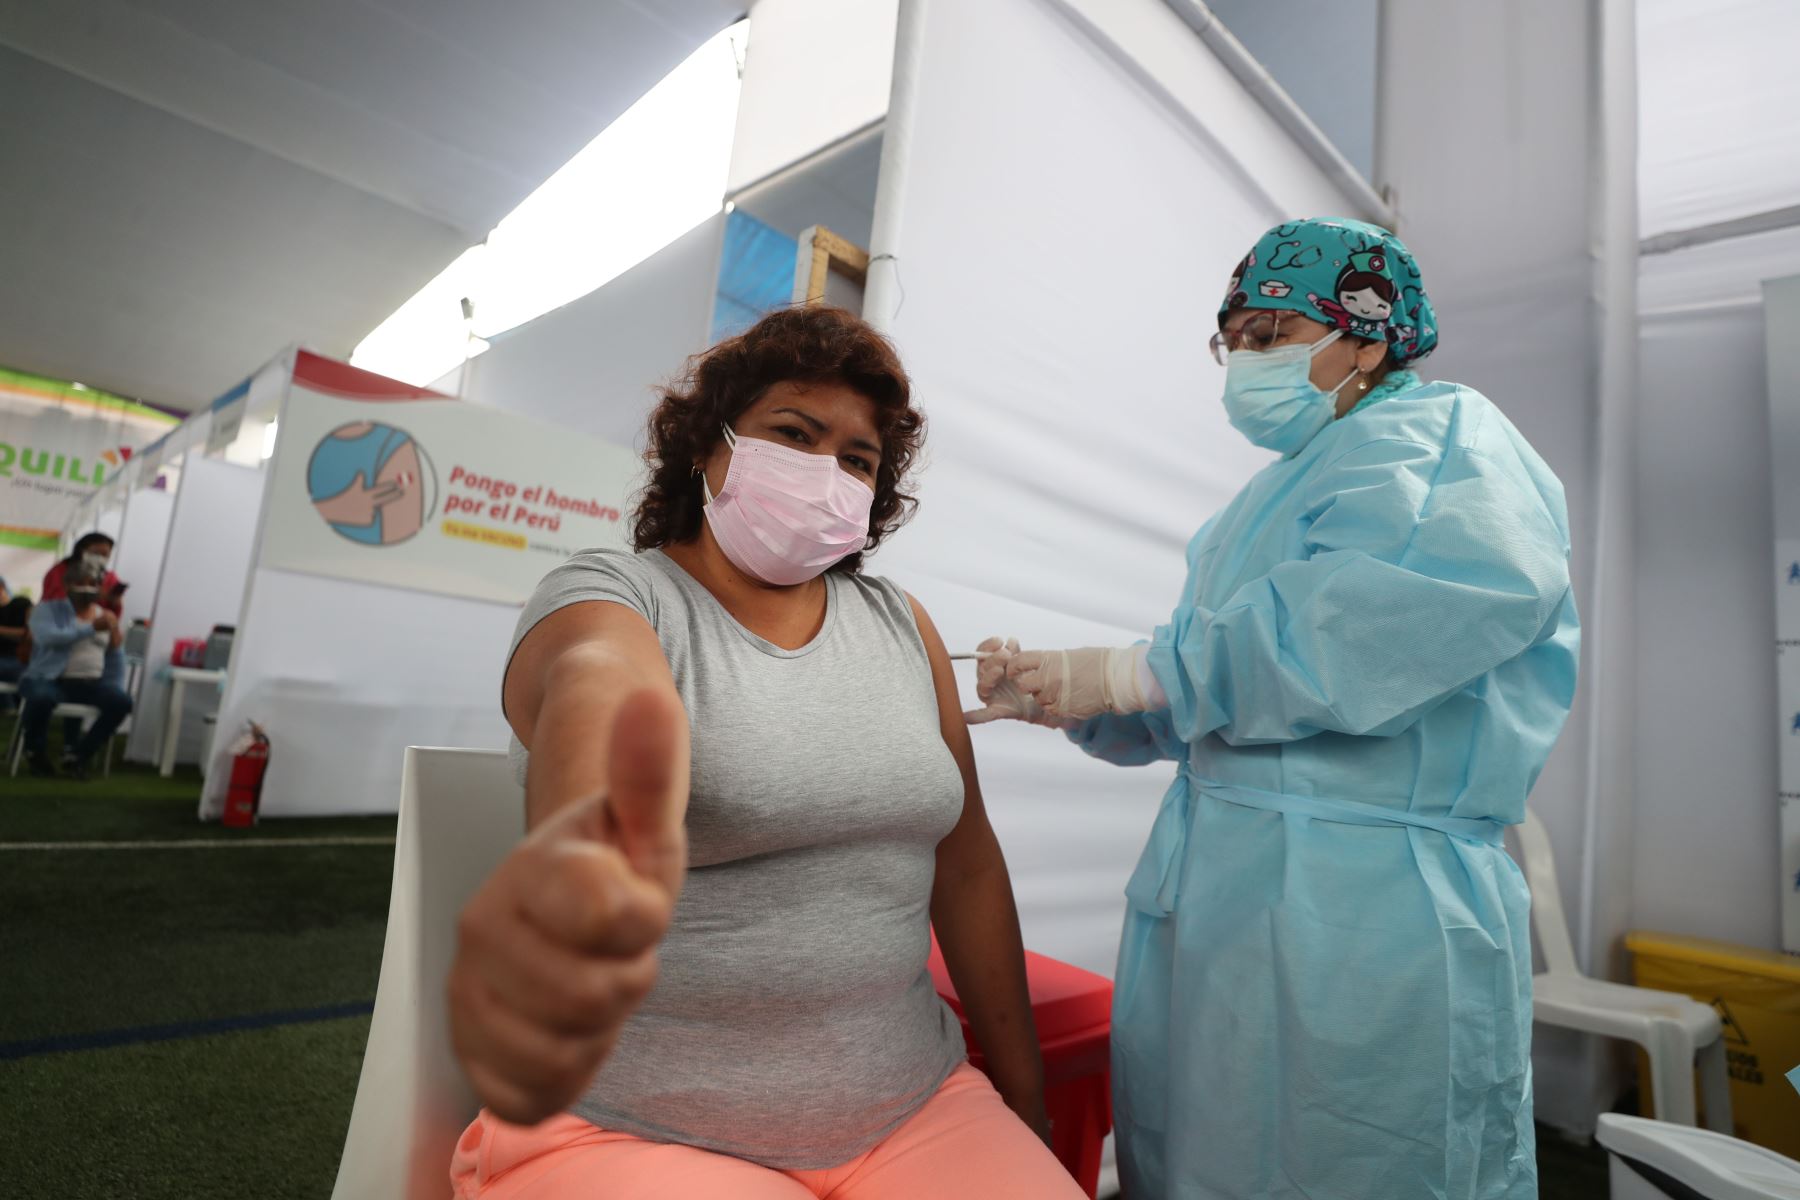 No tener efectos adversos severos en la vacunación es una noticia positiva en medio de la enorme tragedia que ha significado la pandemia, dijo Jiménez. Foto: PCM.